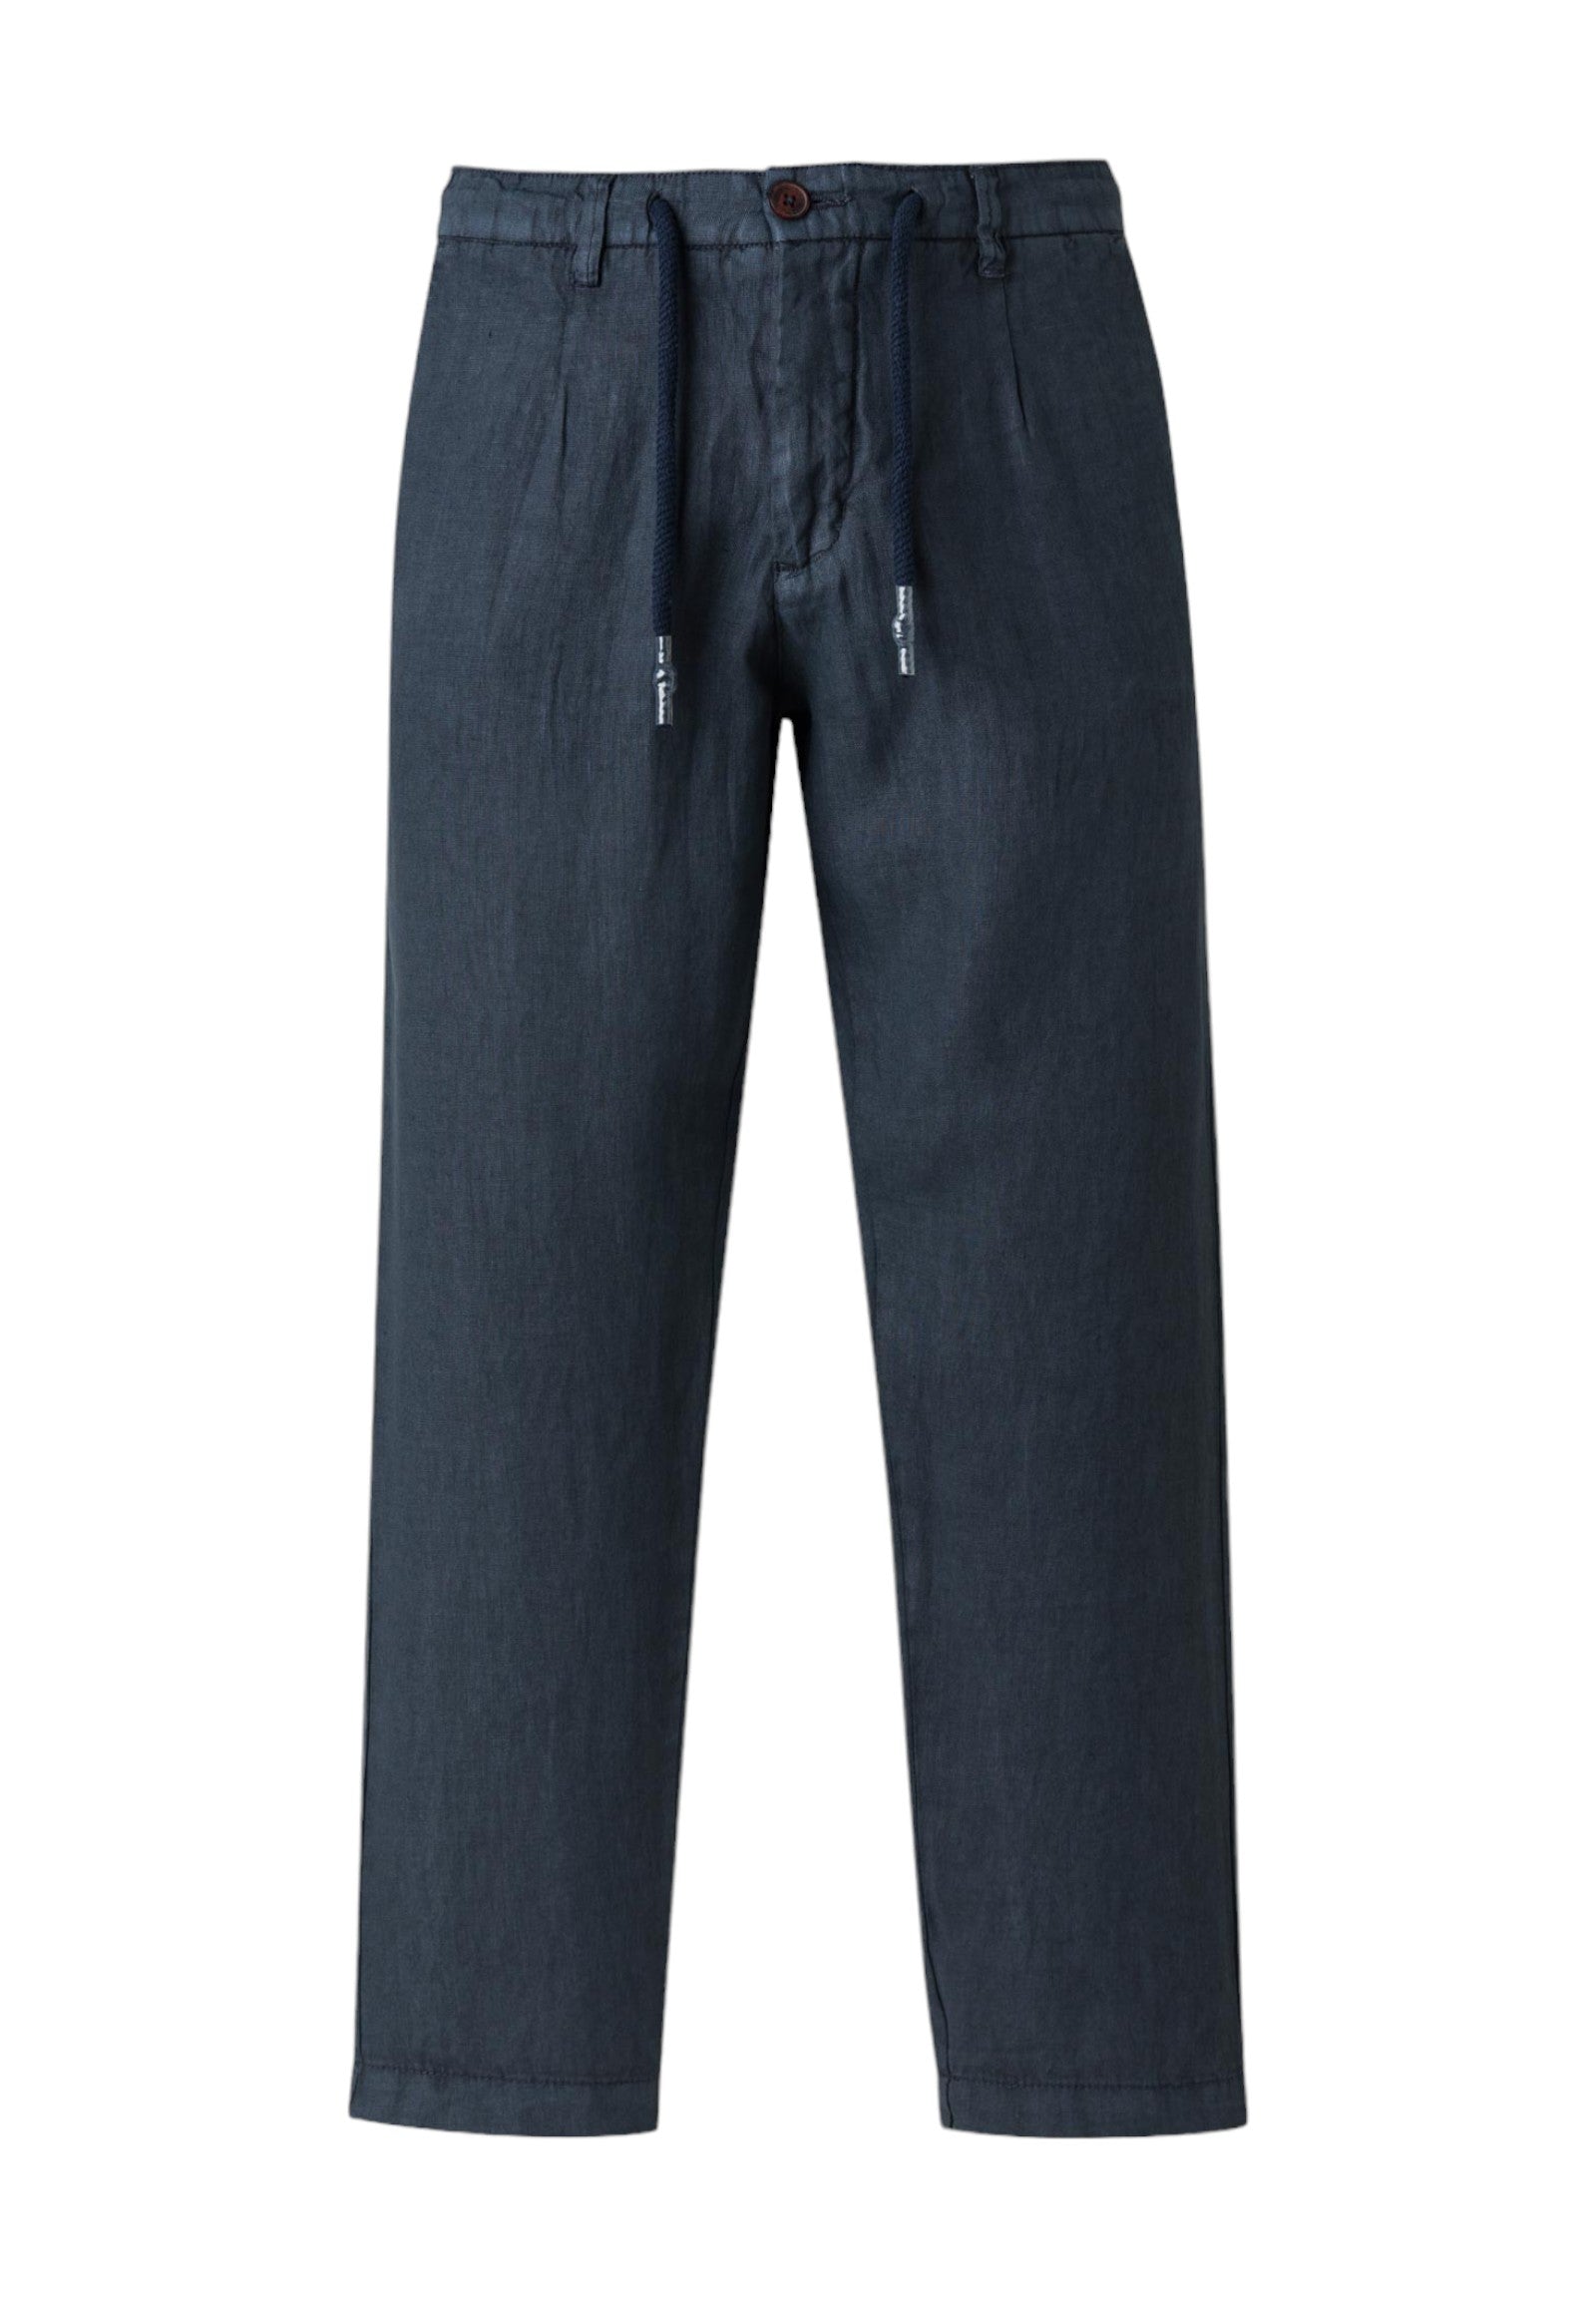 Pantaloni 10mch301-02105 Navy Blue